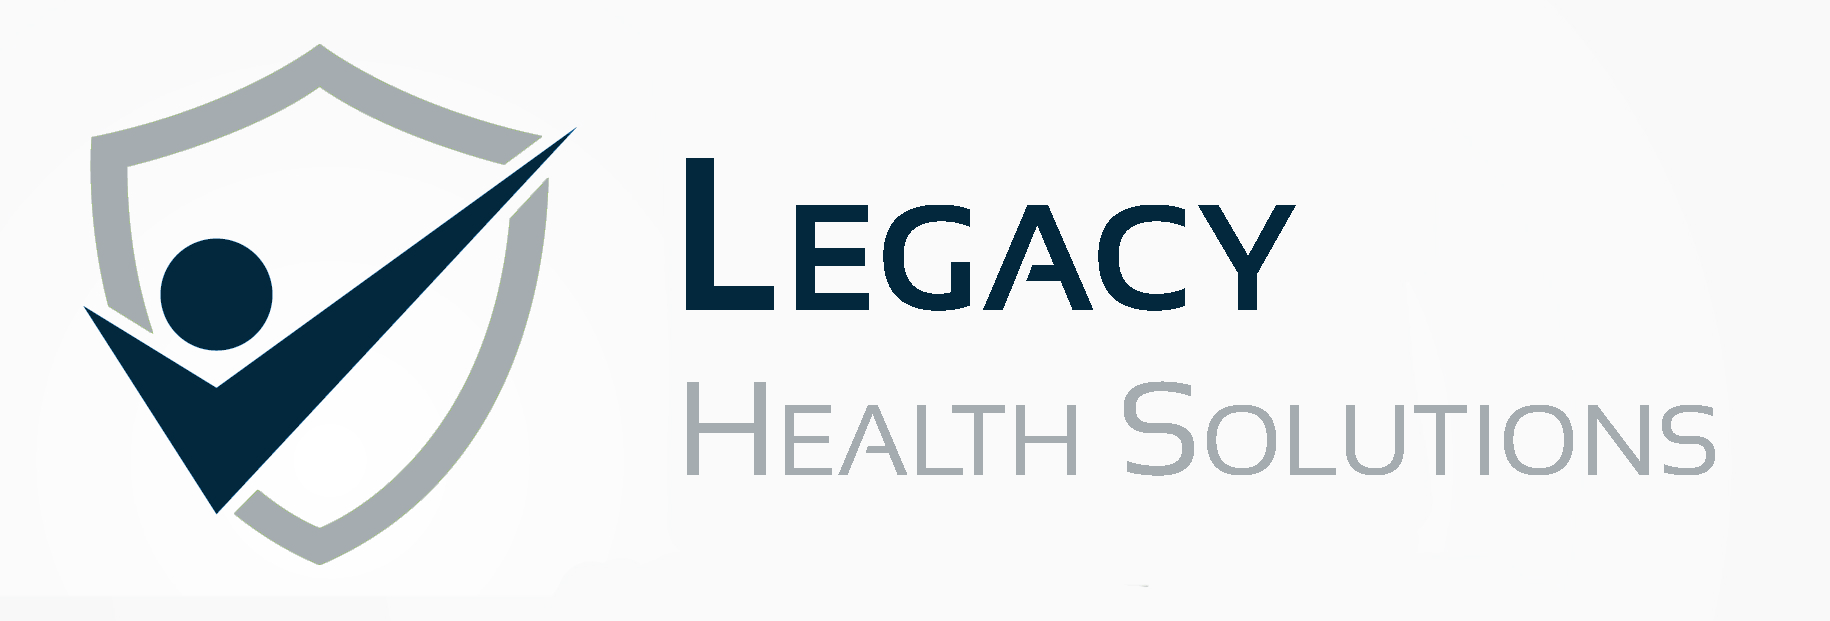 Medicare.gov Logo - Medicare.gov Links